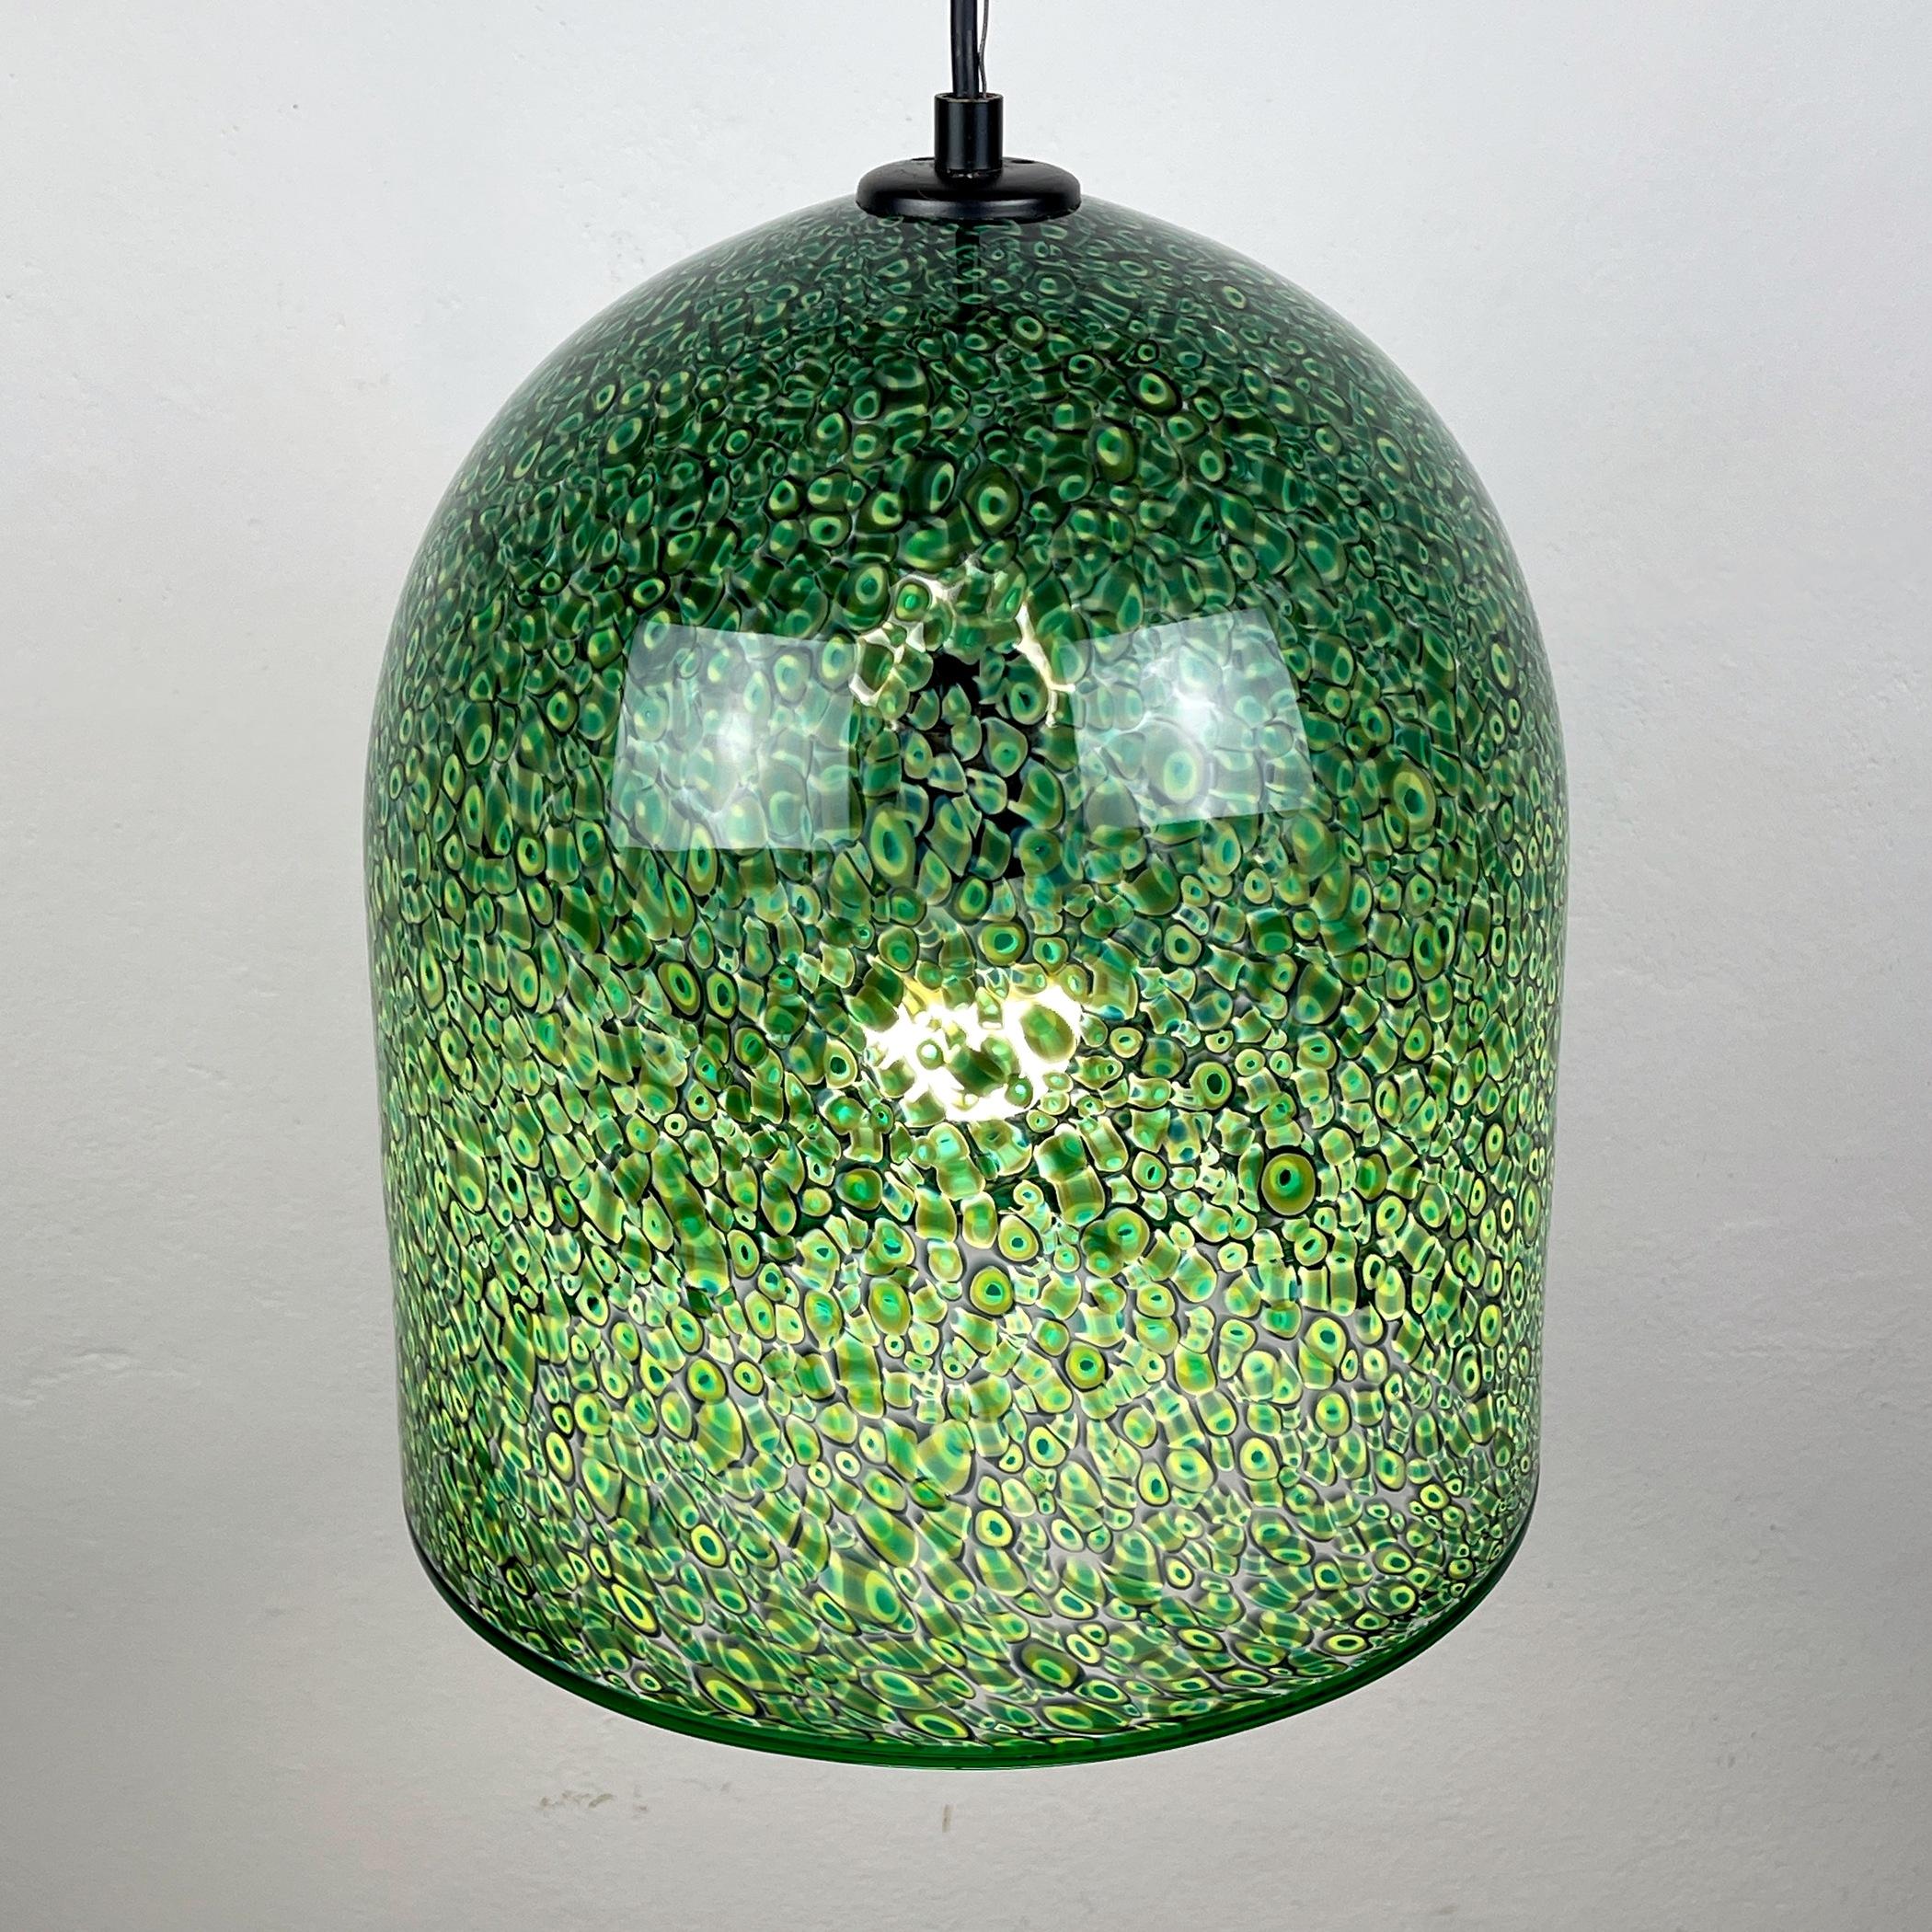  Green murano pendant lamp Neverrino by Gae Aulenti for Vistosi Italy 1976s 1